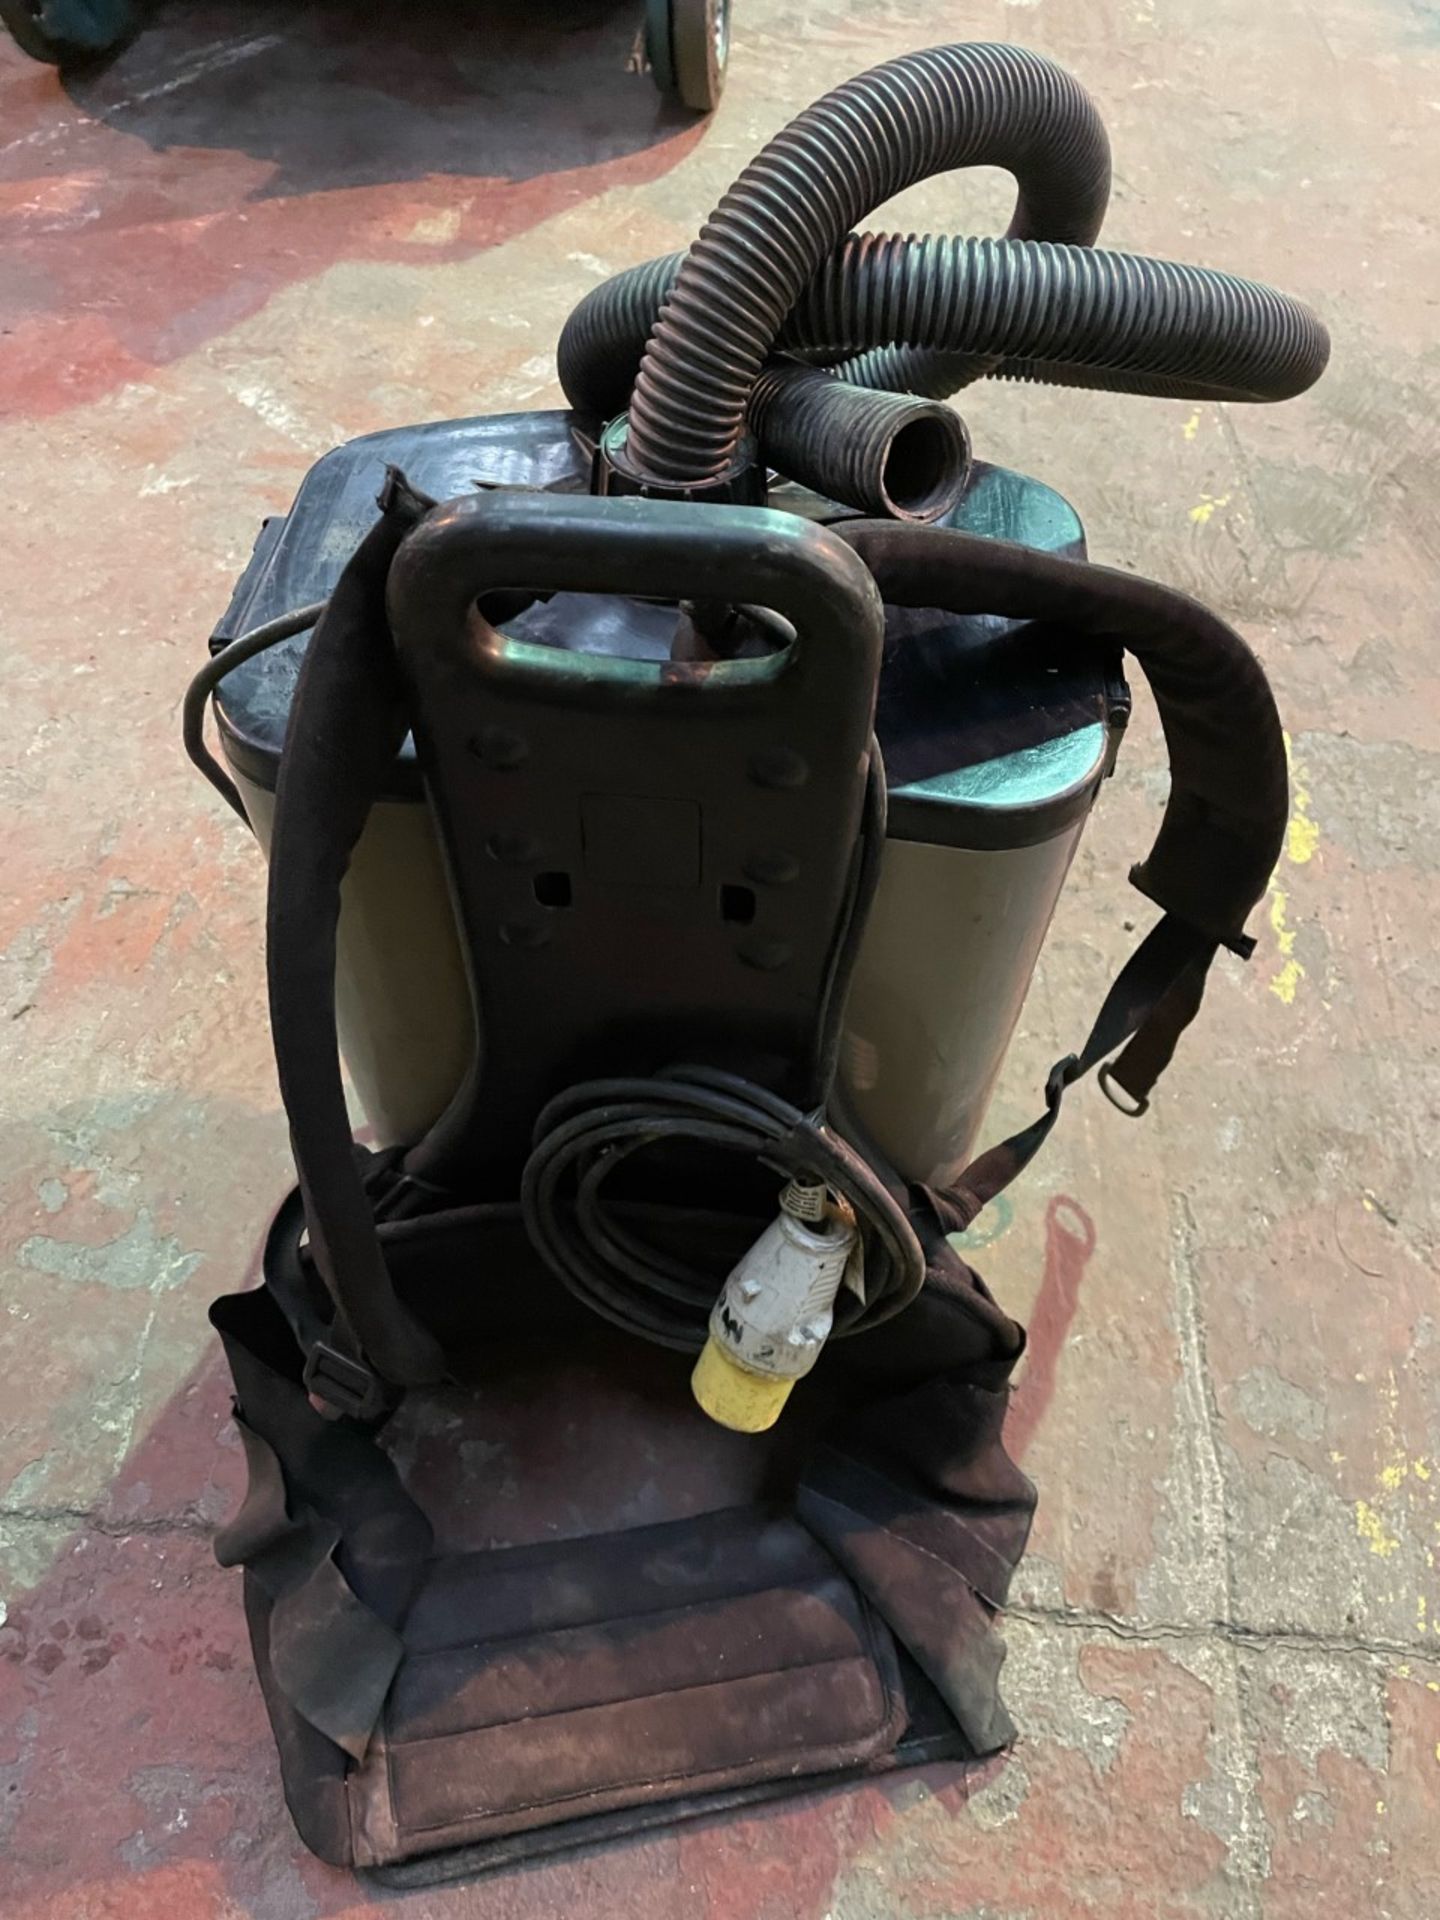 Numatic RSV200 industrial backpack 110v vacuum cleaner - Image 2 of 3